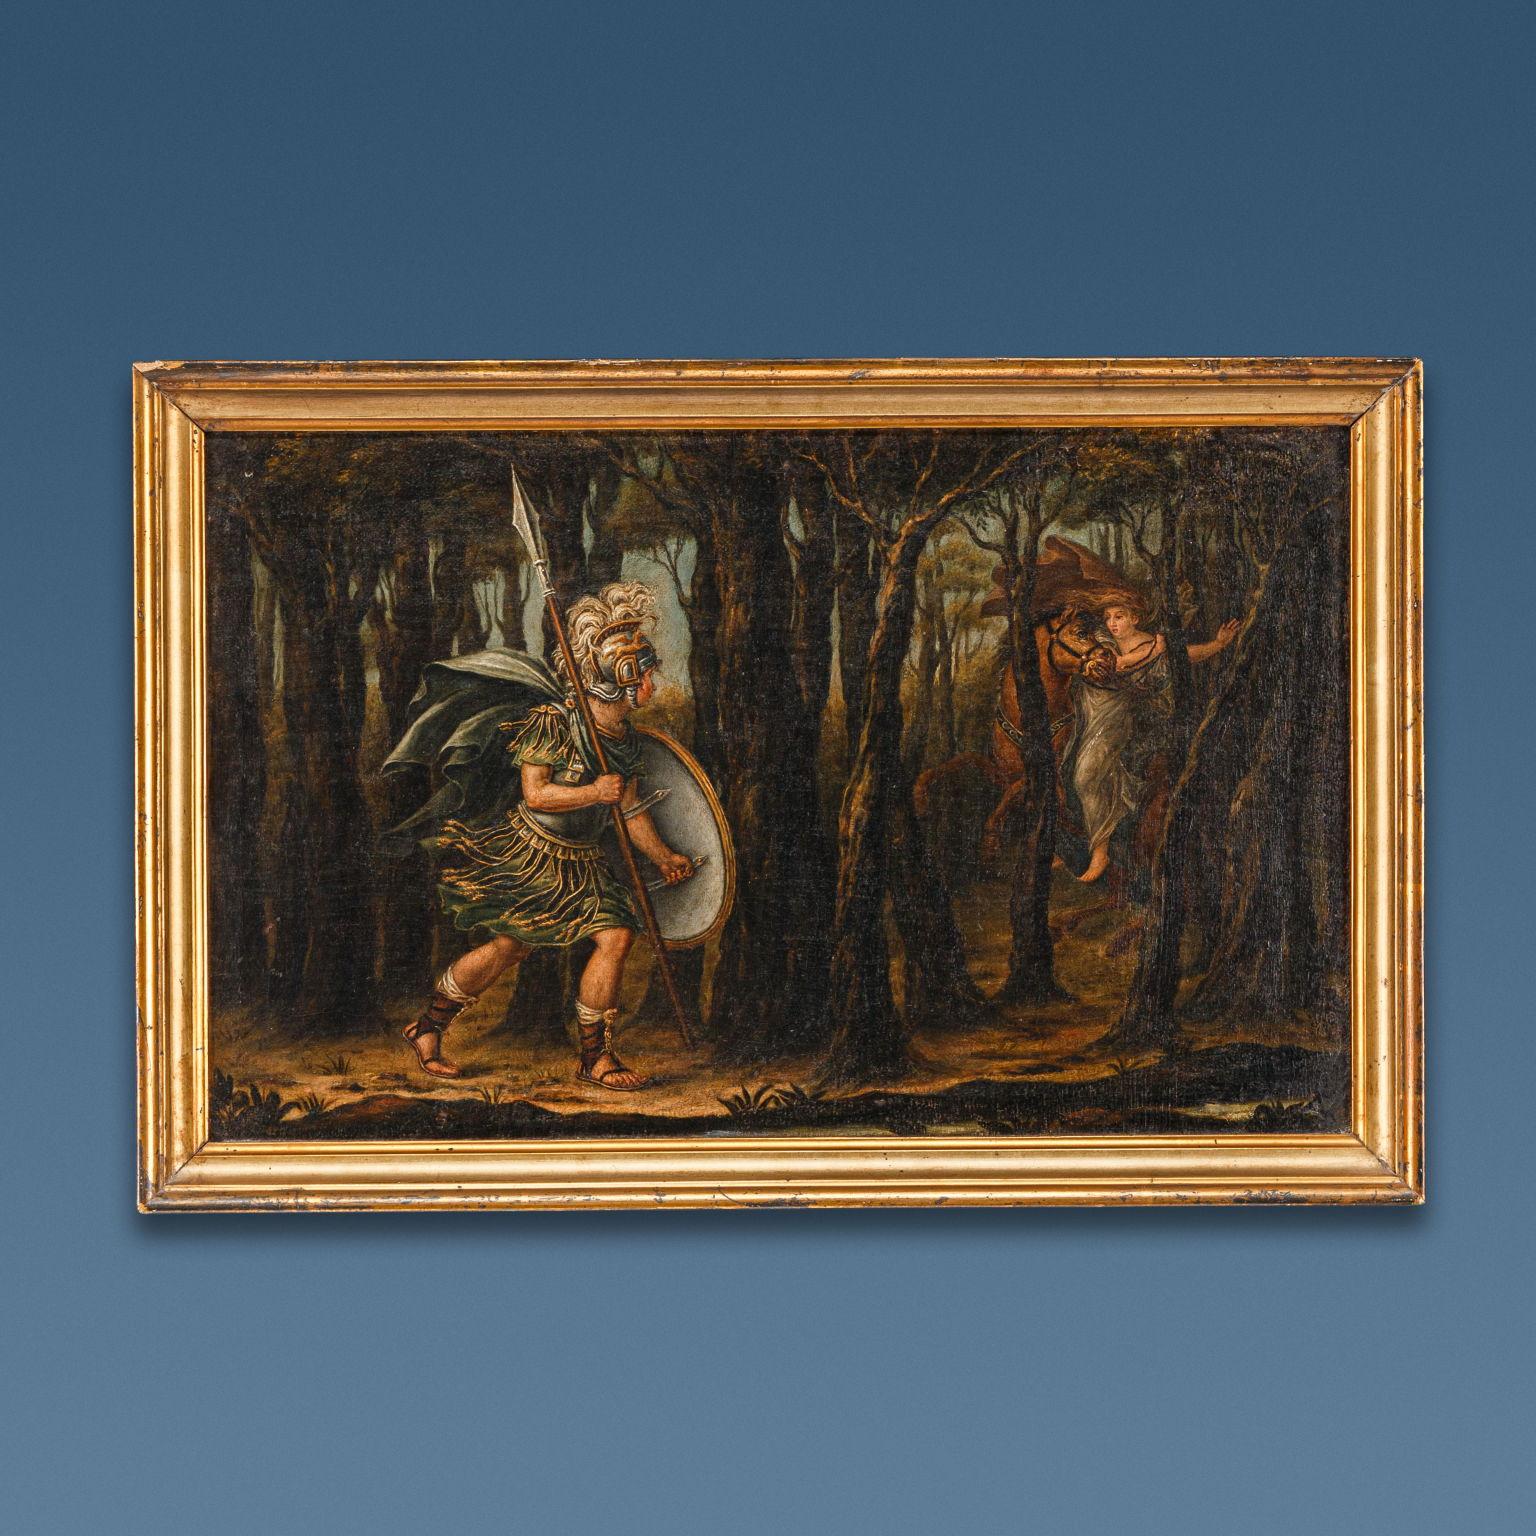 Ölgemälde auf Leinwand. Lombardische Gegend des späten 18. Jahrhunderts. Die vier Gemälde zeigen Szenen aus Orlando Furioso, dem berühmten epischen Gedicht von Ludovico Ariosto, das 1516 zum ersten Mal veröffentlicht wurde. Auf der Rückseite des